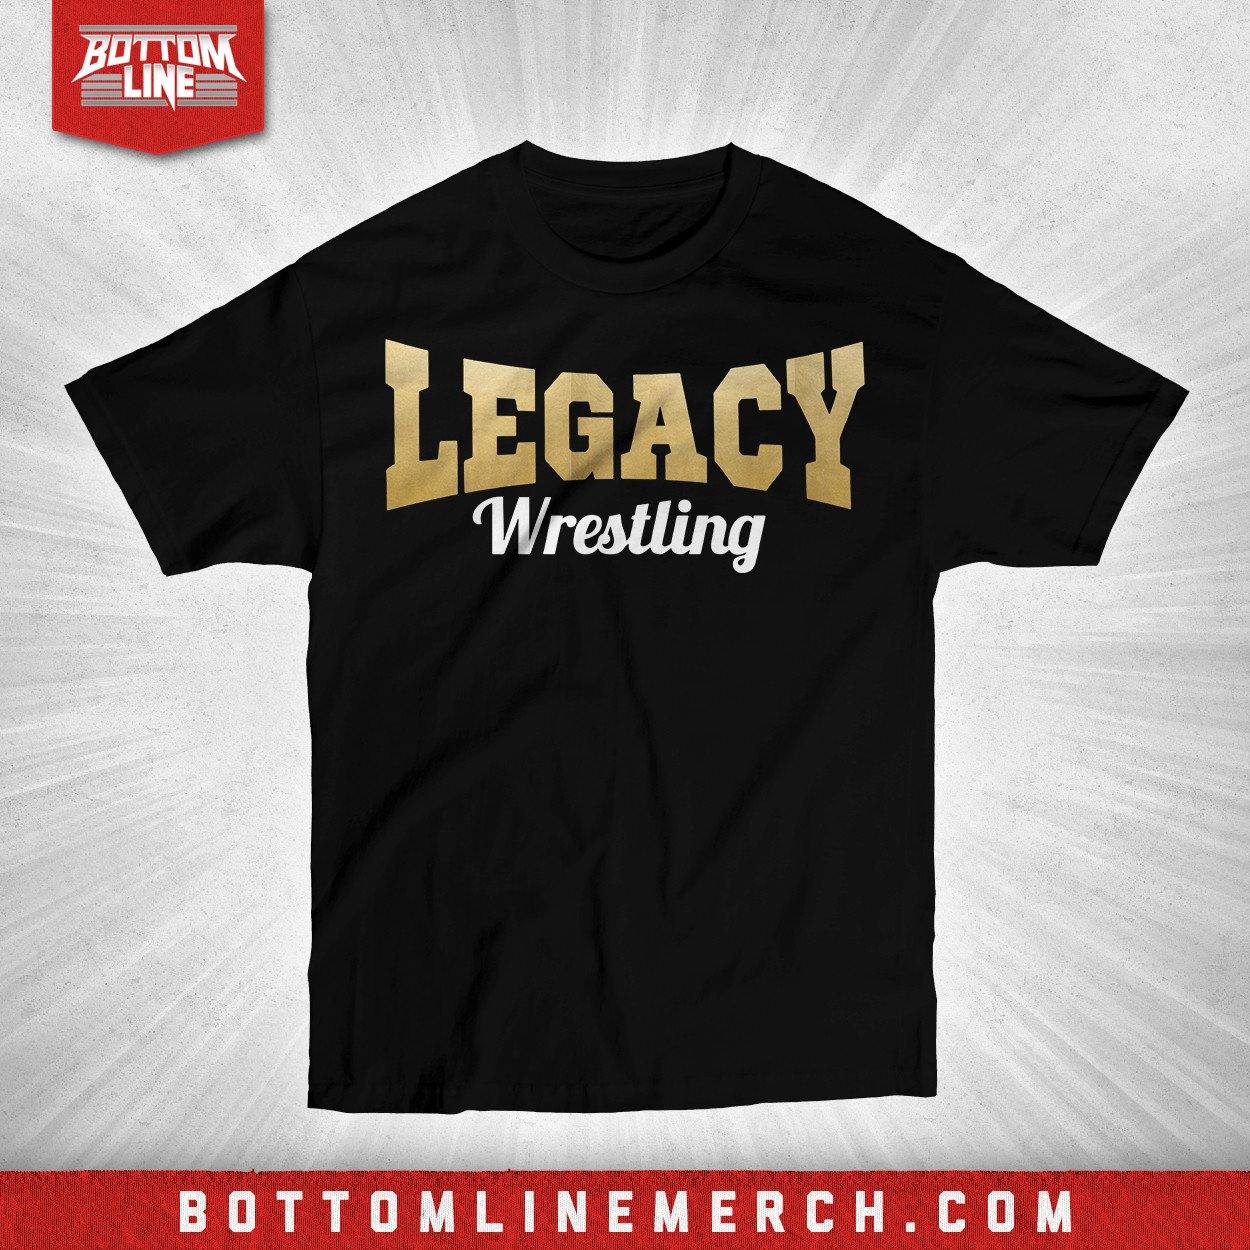 Buy Now – Legacy Wrestling "Logo Foil" Shirt – Wrestler & Wrestling Merch – Bottom Line